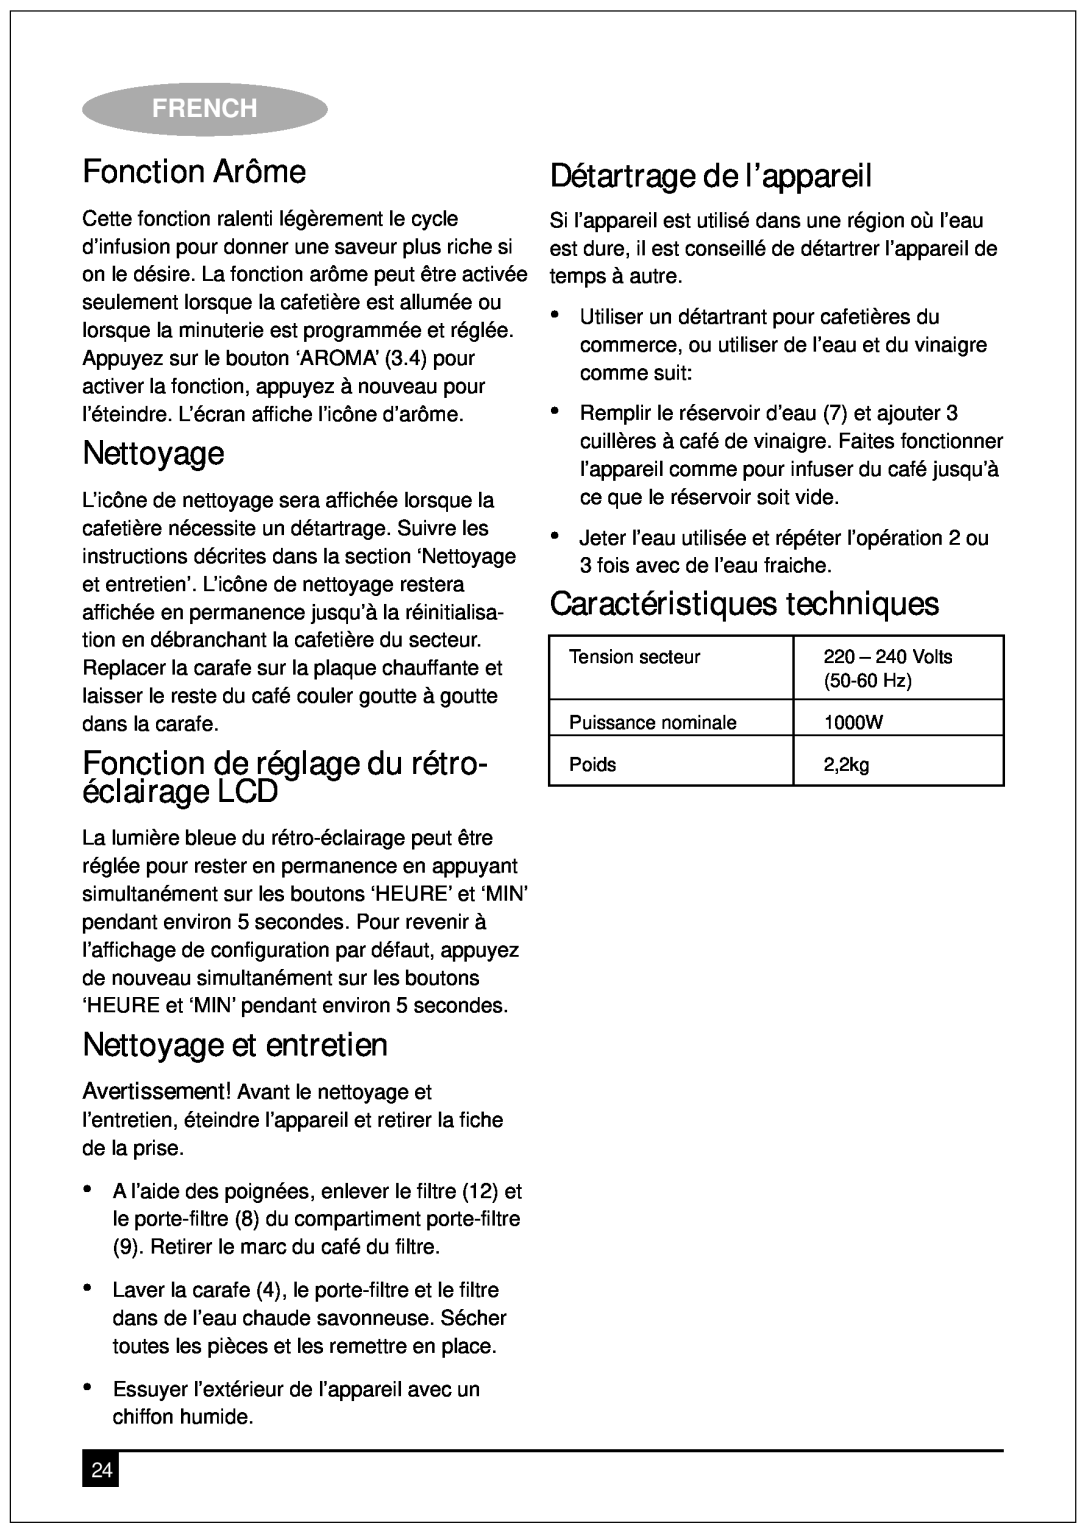 Black & Decker DCM90 manual Fonction Arôme, Fonction de réglage du rétro- éclairage LCD, Nettoyage et entretien, French 